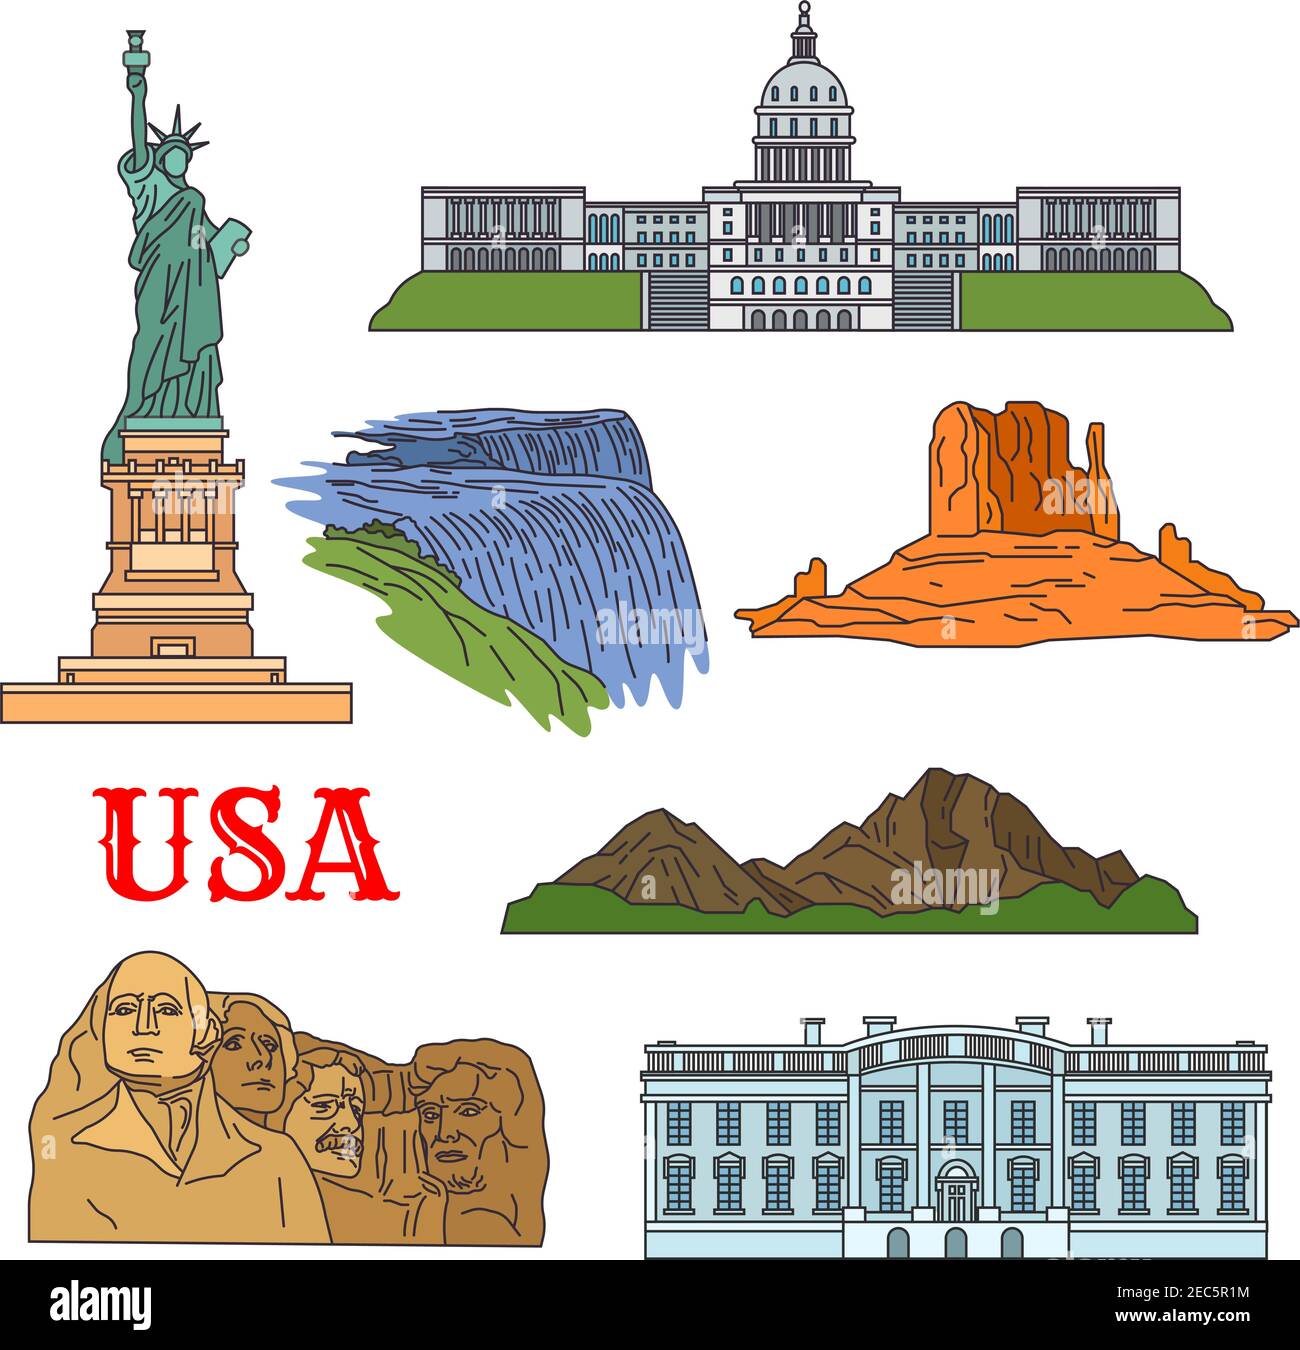 USA Travel monumenti storici di cultura, storia e natura sottile icona con la statua della libertà, Grand Canyon, Campidoglio degli Stati Uniti, Niagara Falls, Rus Illustrazione Vettoriale